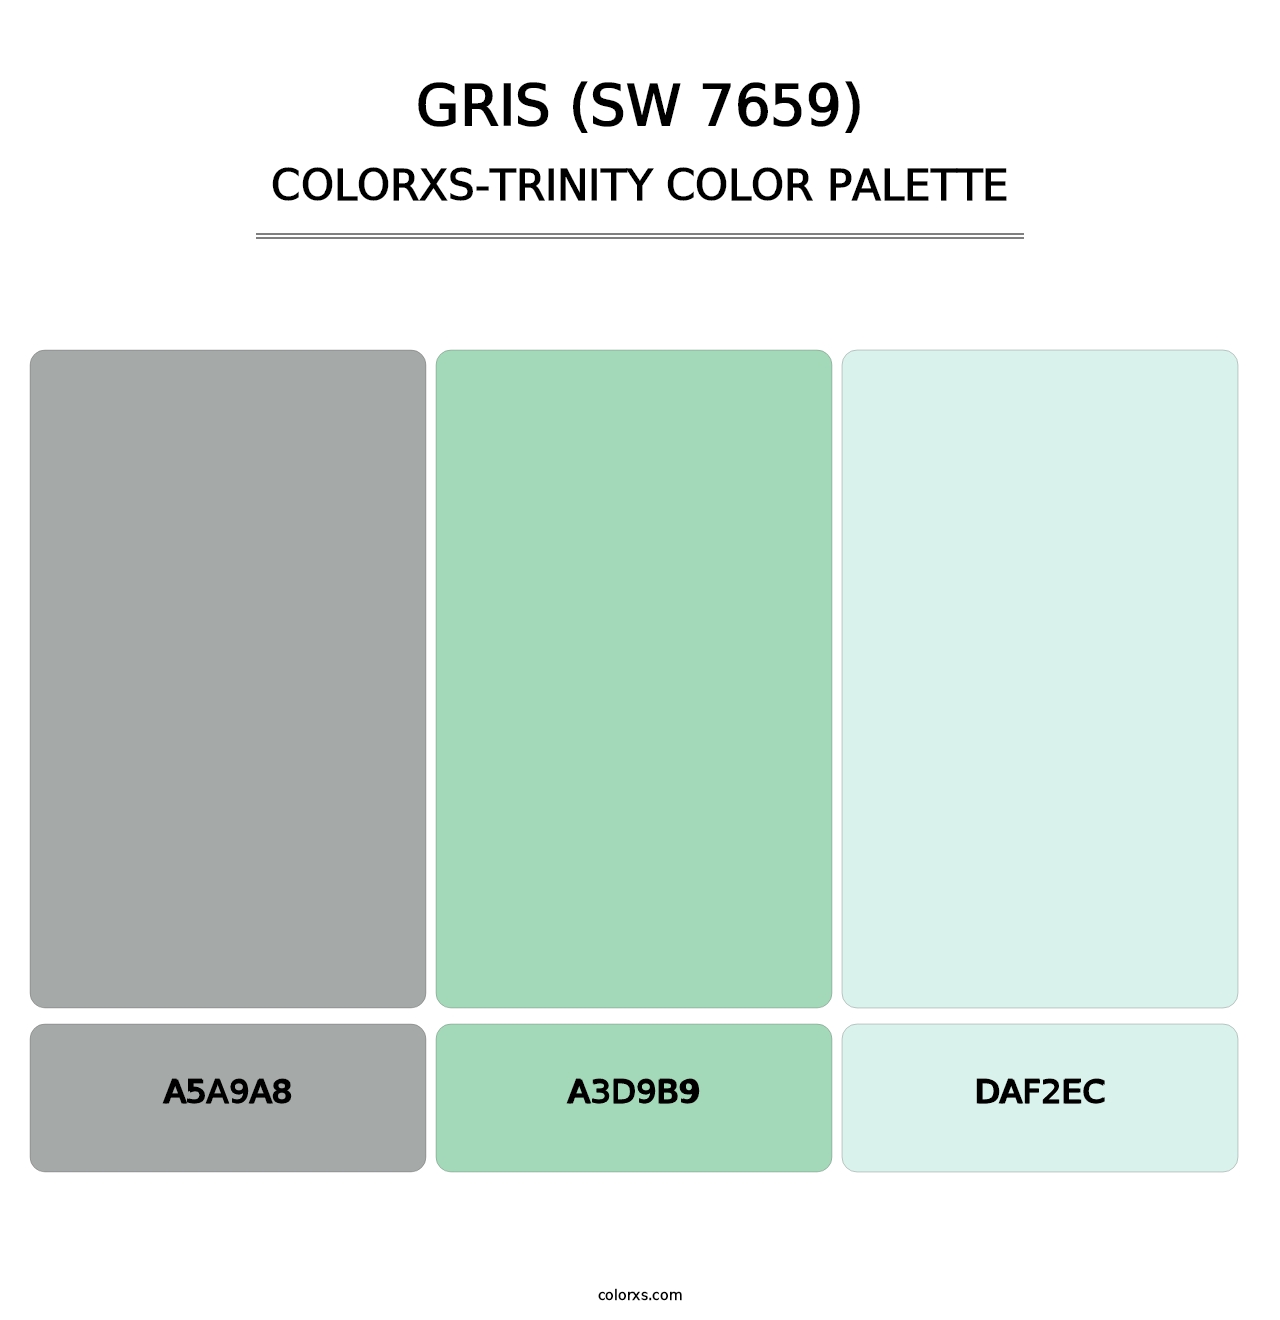 Gris (SW 7659) - Colorxs Trinity Palette